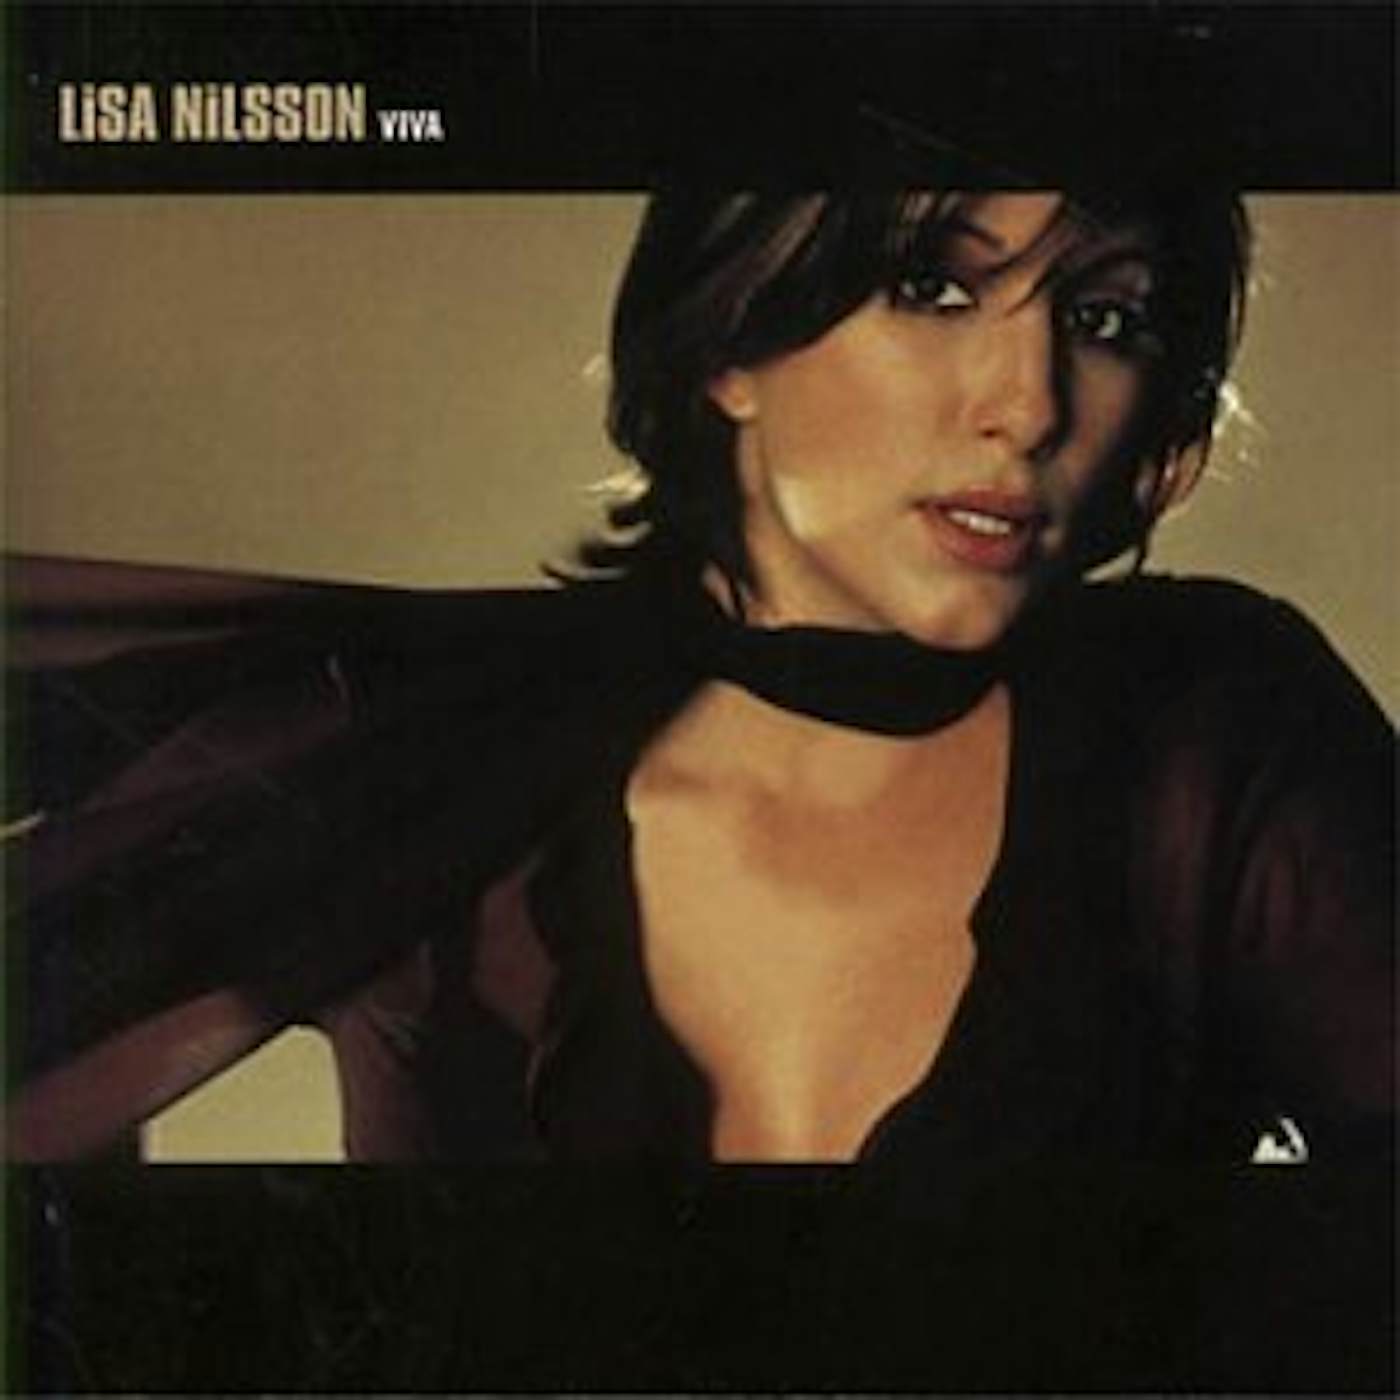 Lisa Nilsson VIVA CD